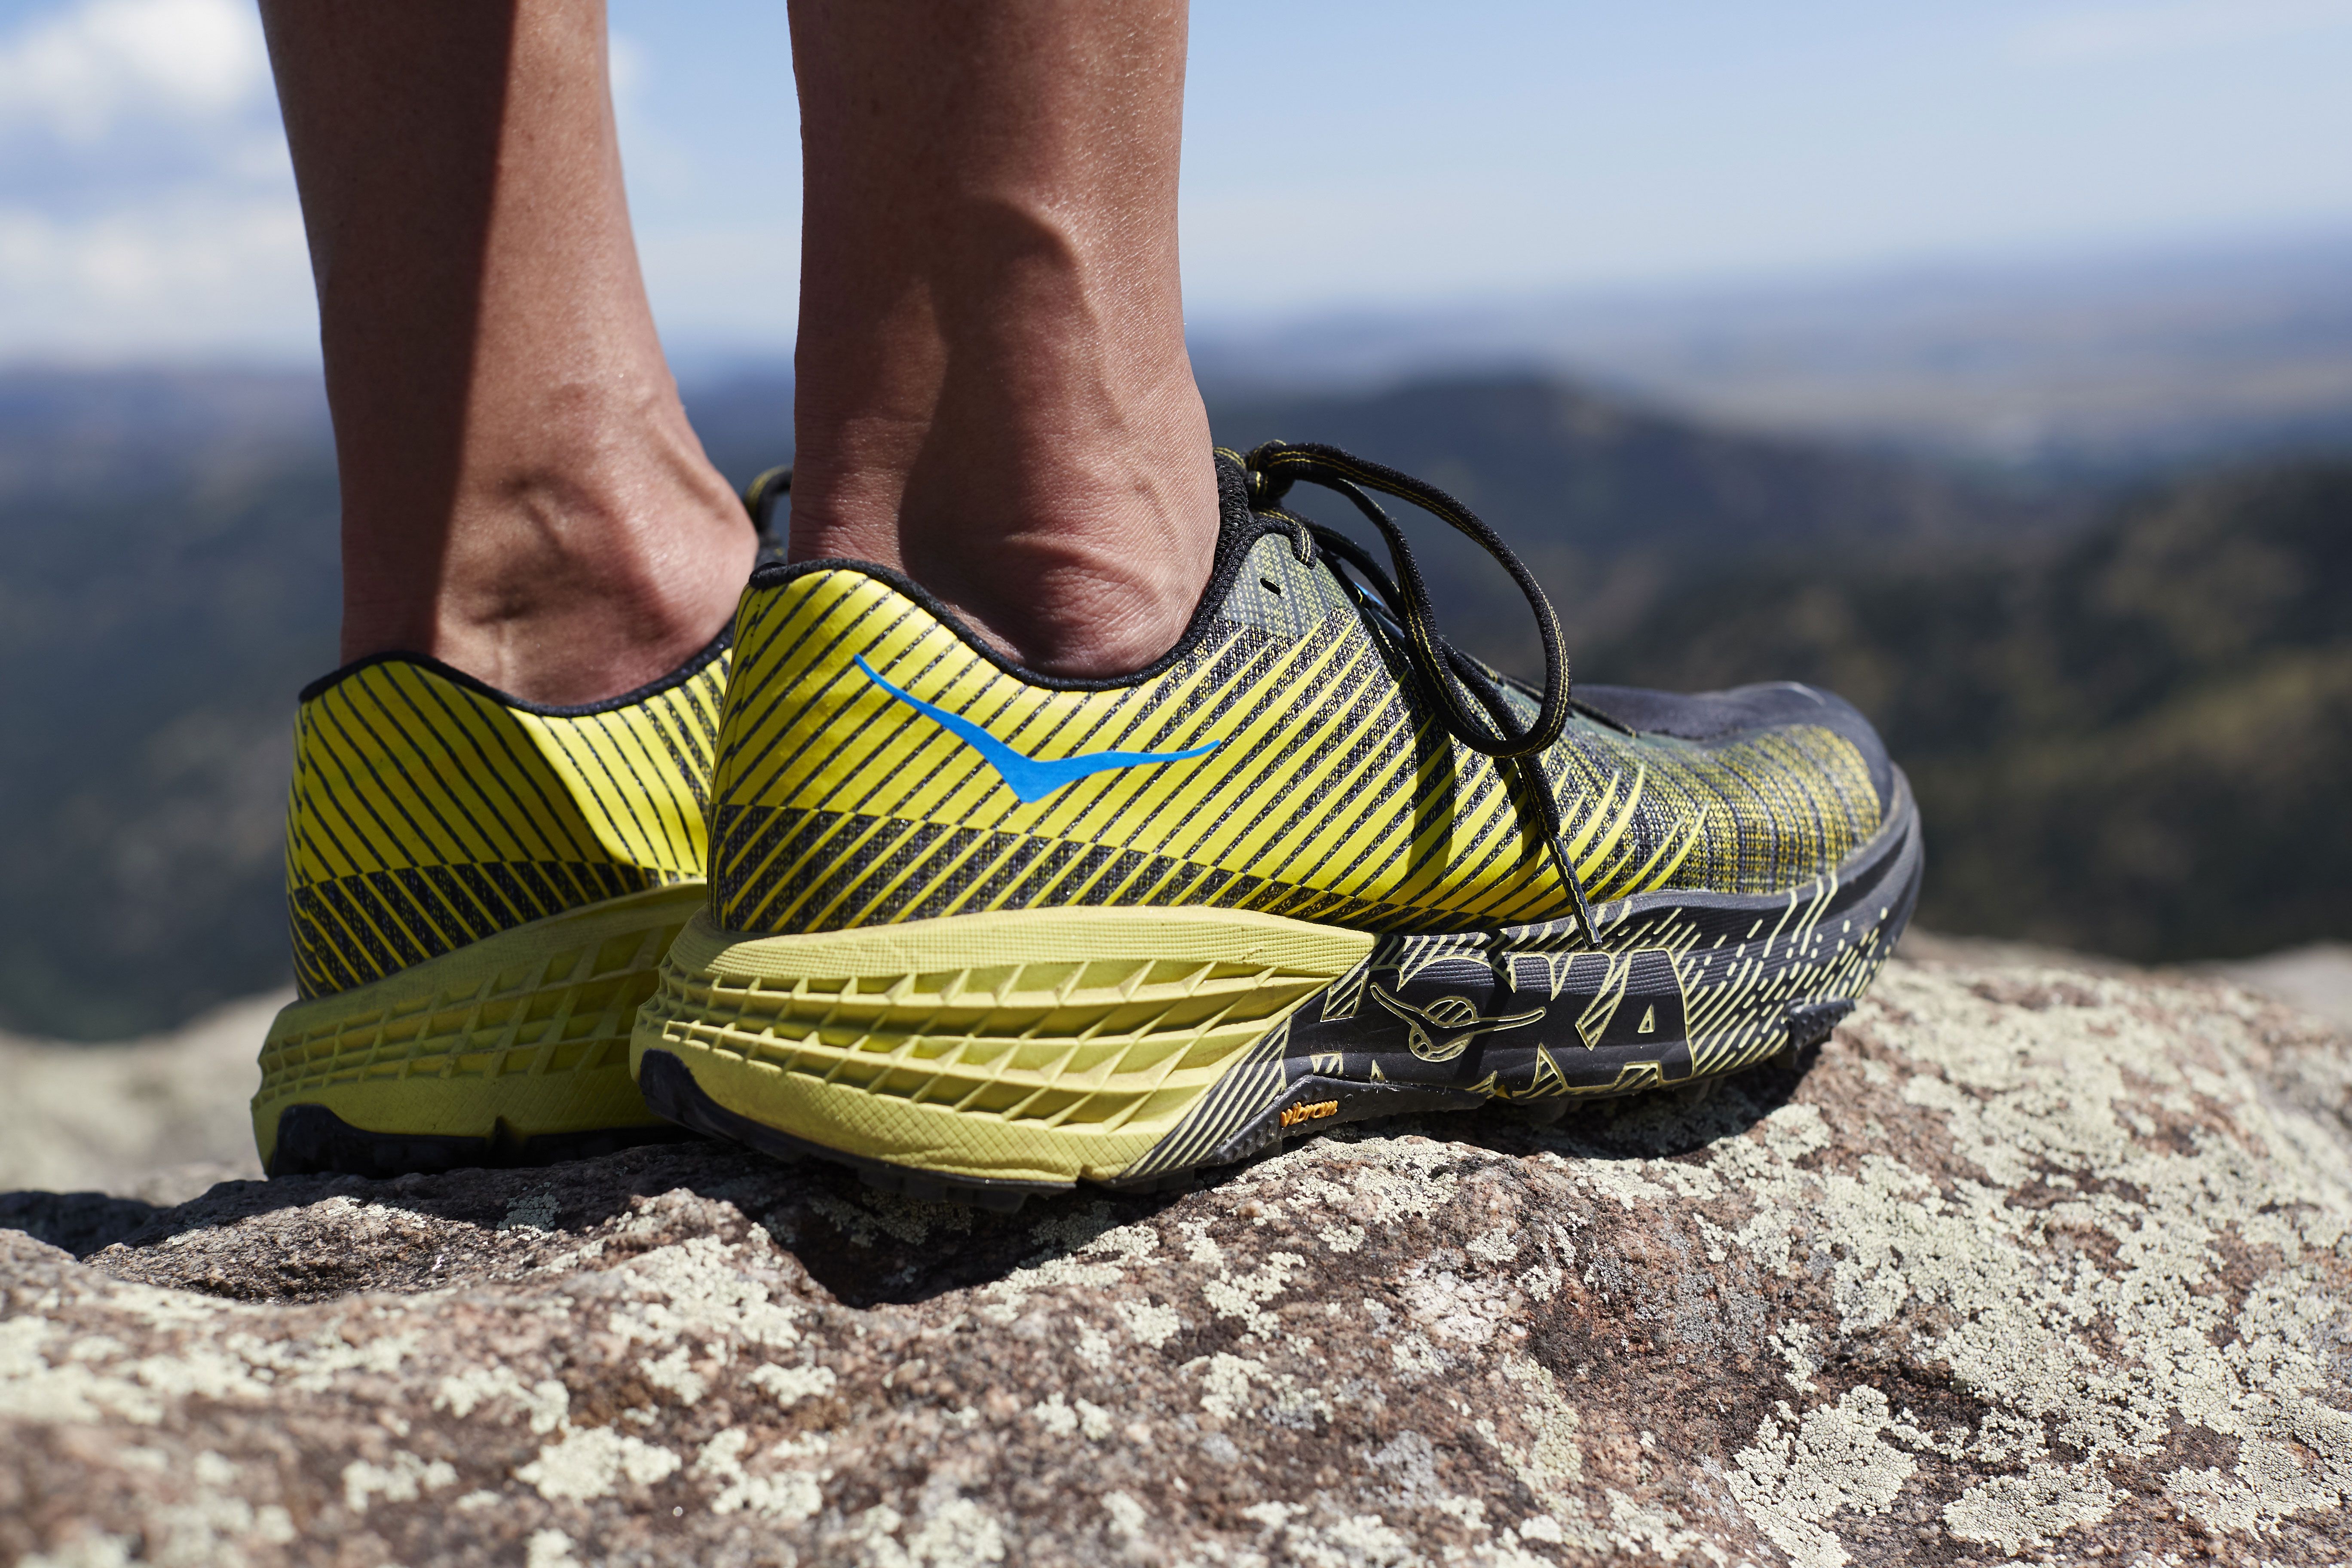 Las EVO Speedgoat, las nuevas zapatillas de trail de Hoka One One